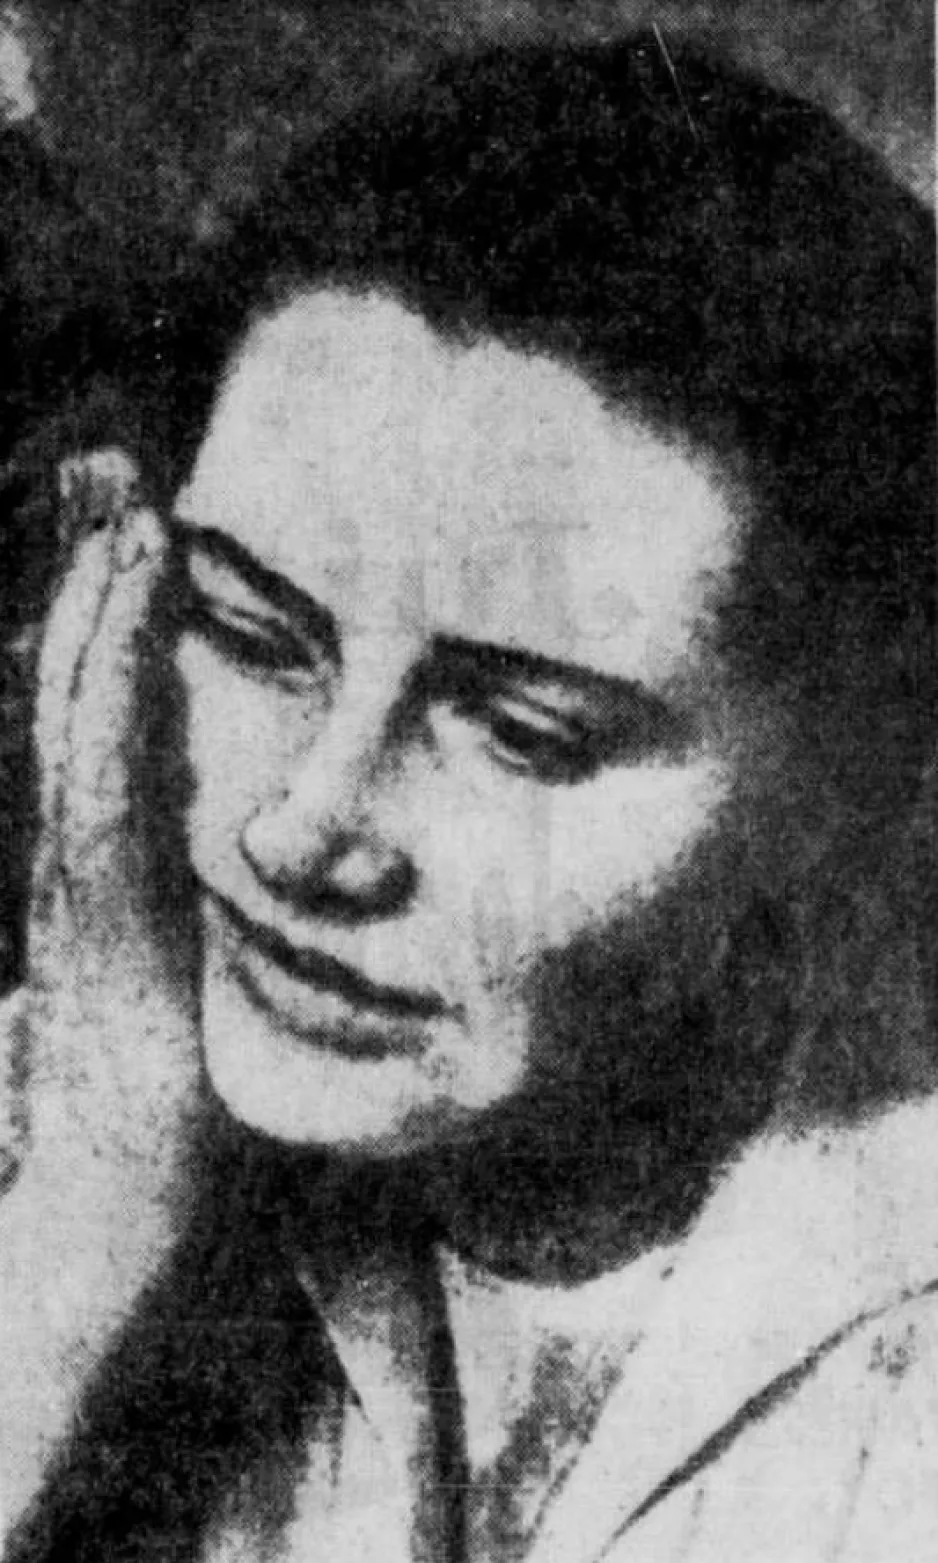 L’épouse de Gagarine, Valentina Ivanovna Gagarina, née Goryacheva, écoutant un reportage à la radio concernant son vol dans l’espace. Son inquiétude est bien visible. Anon., « Commentant le dernier exploit russe – Les États-Unis tirent de l’arrière (Kennedy). » Le Soleil, 13 avril 1961, 23.